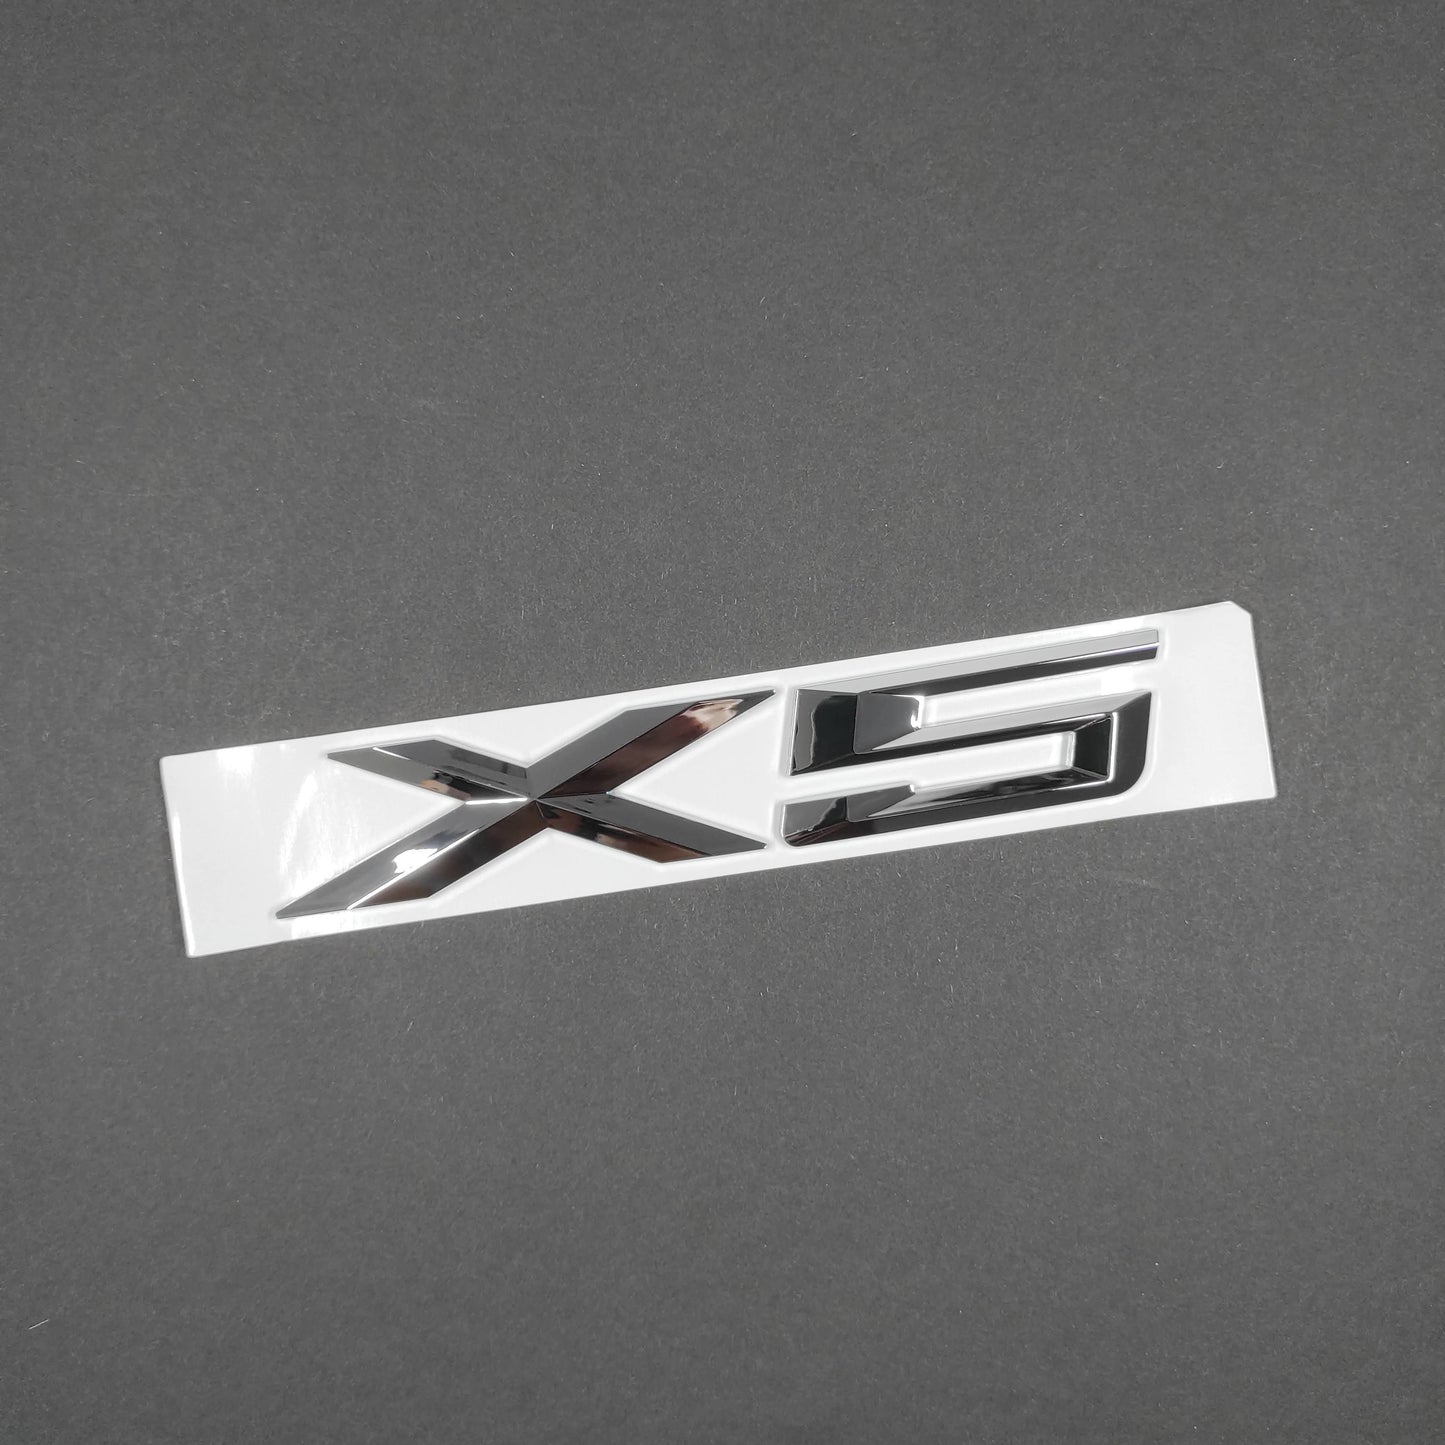 BMW X5 E53 E70 Chrome Rear Emblem Badge